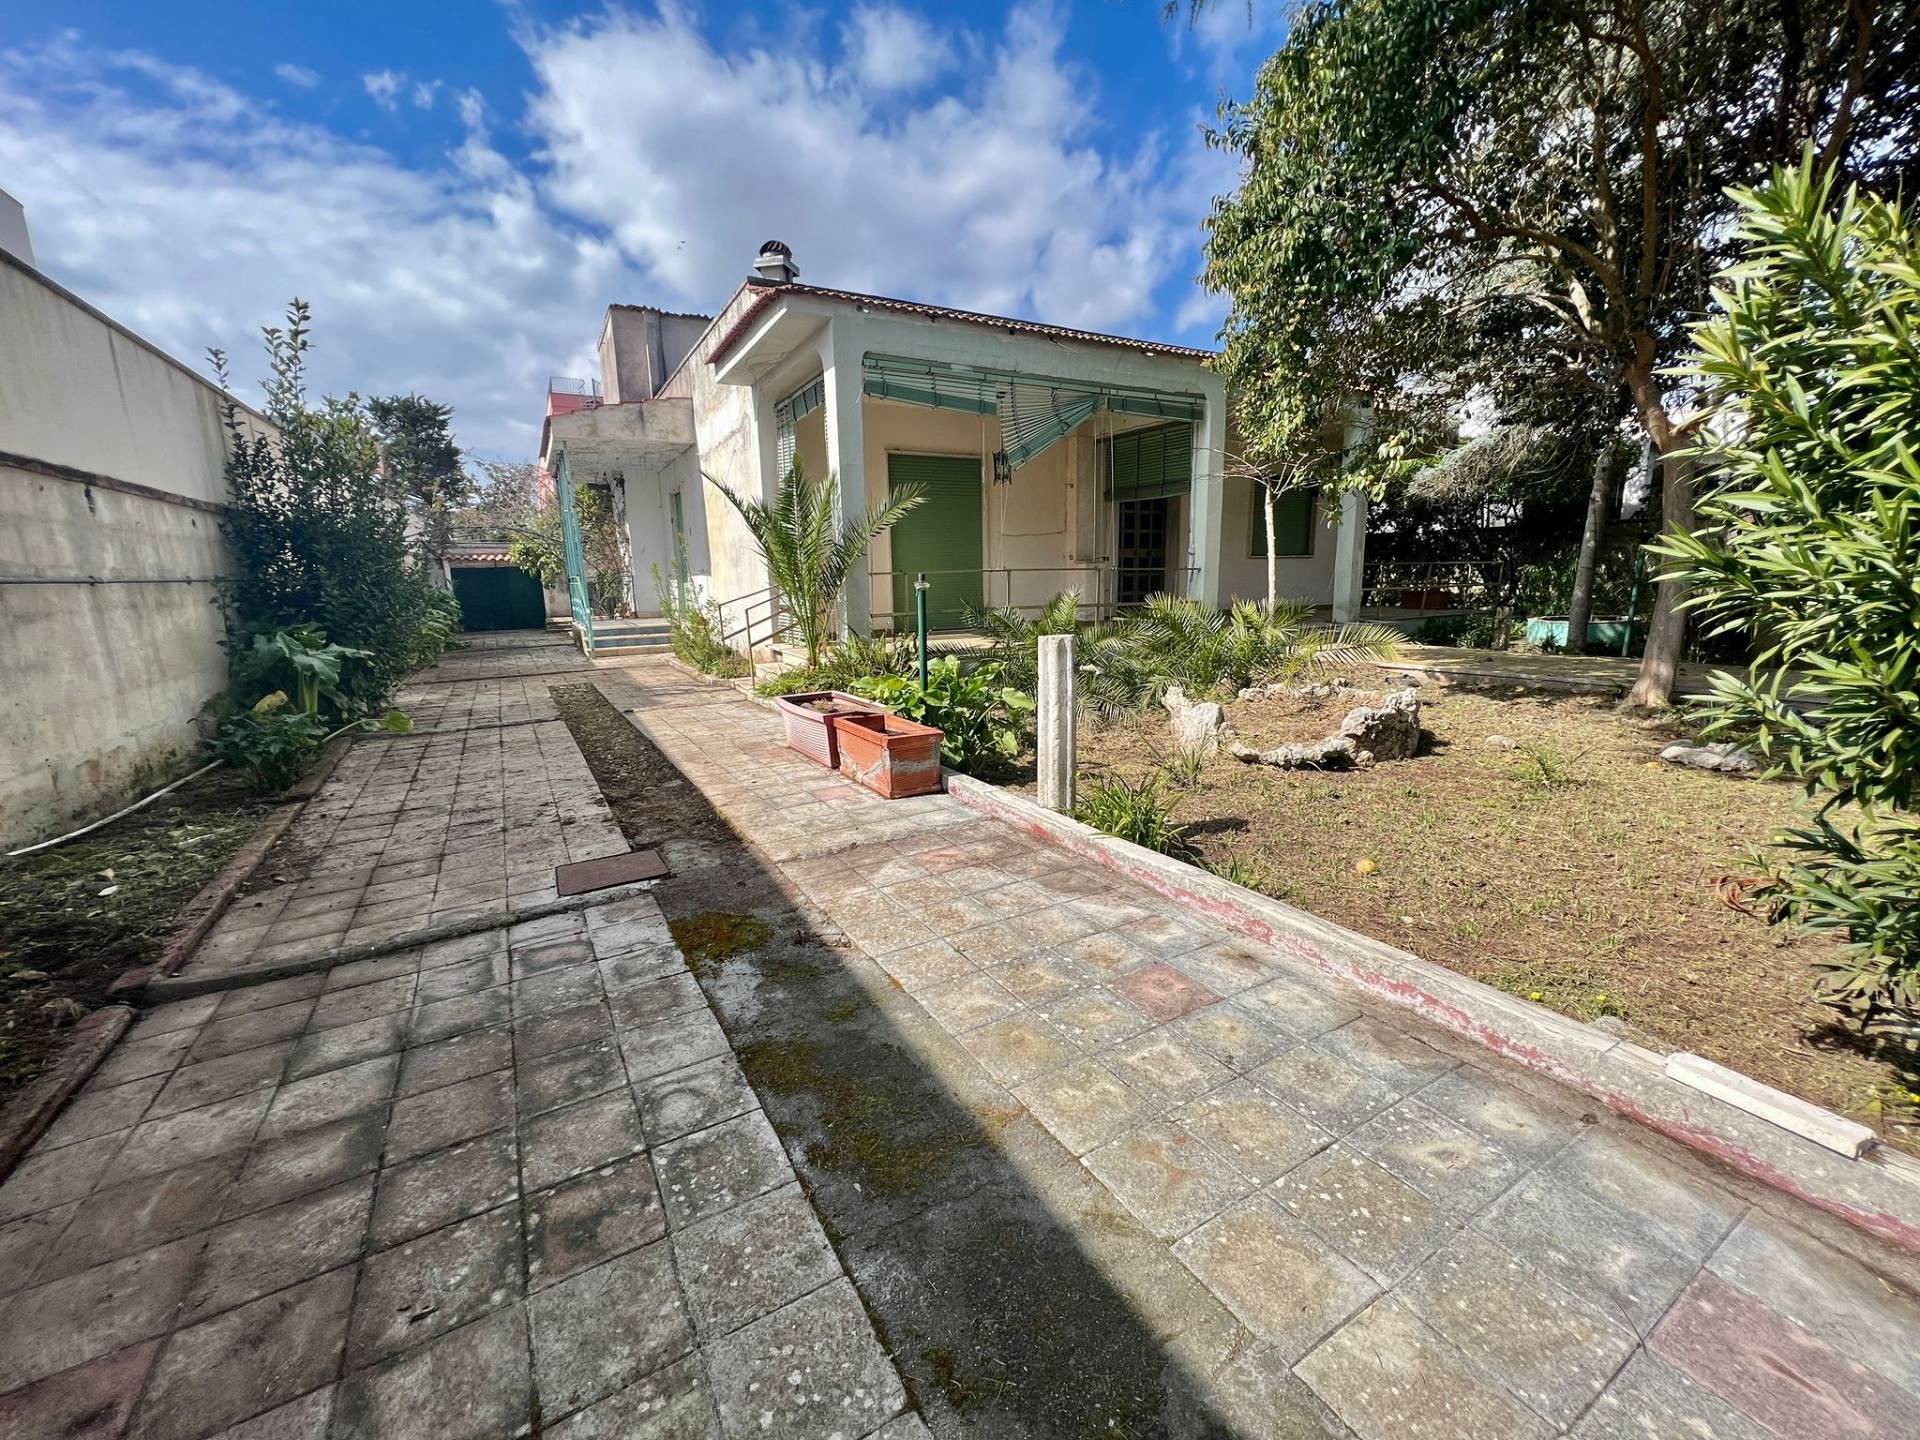 Villa in vendita a Cavallino, 6 locali, zona romediano, prezzo € 250.000 | PortaleAgenzieImmobiliari.it